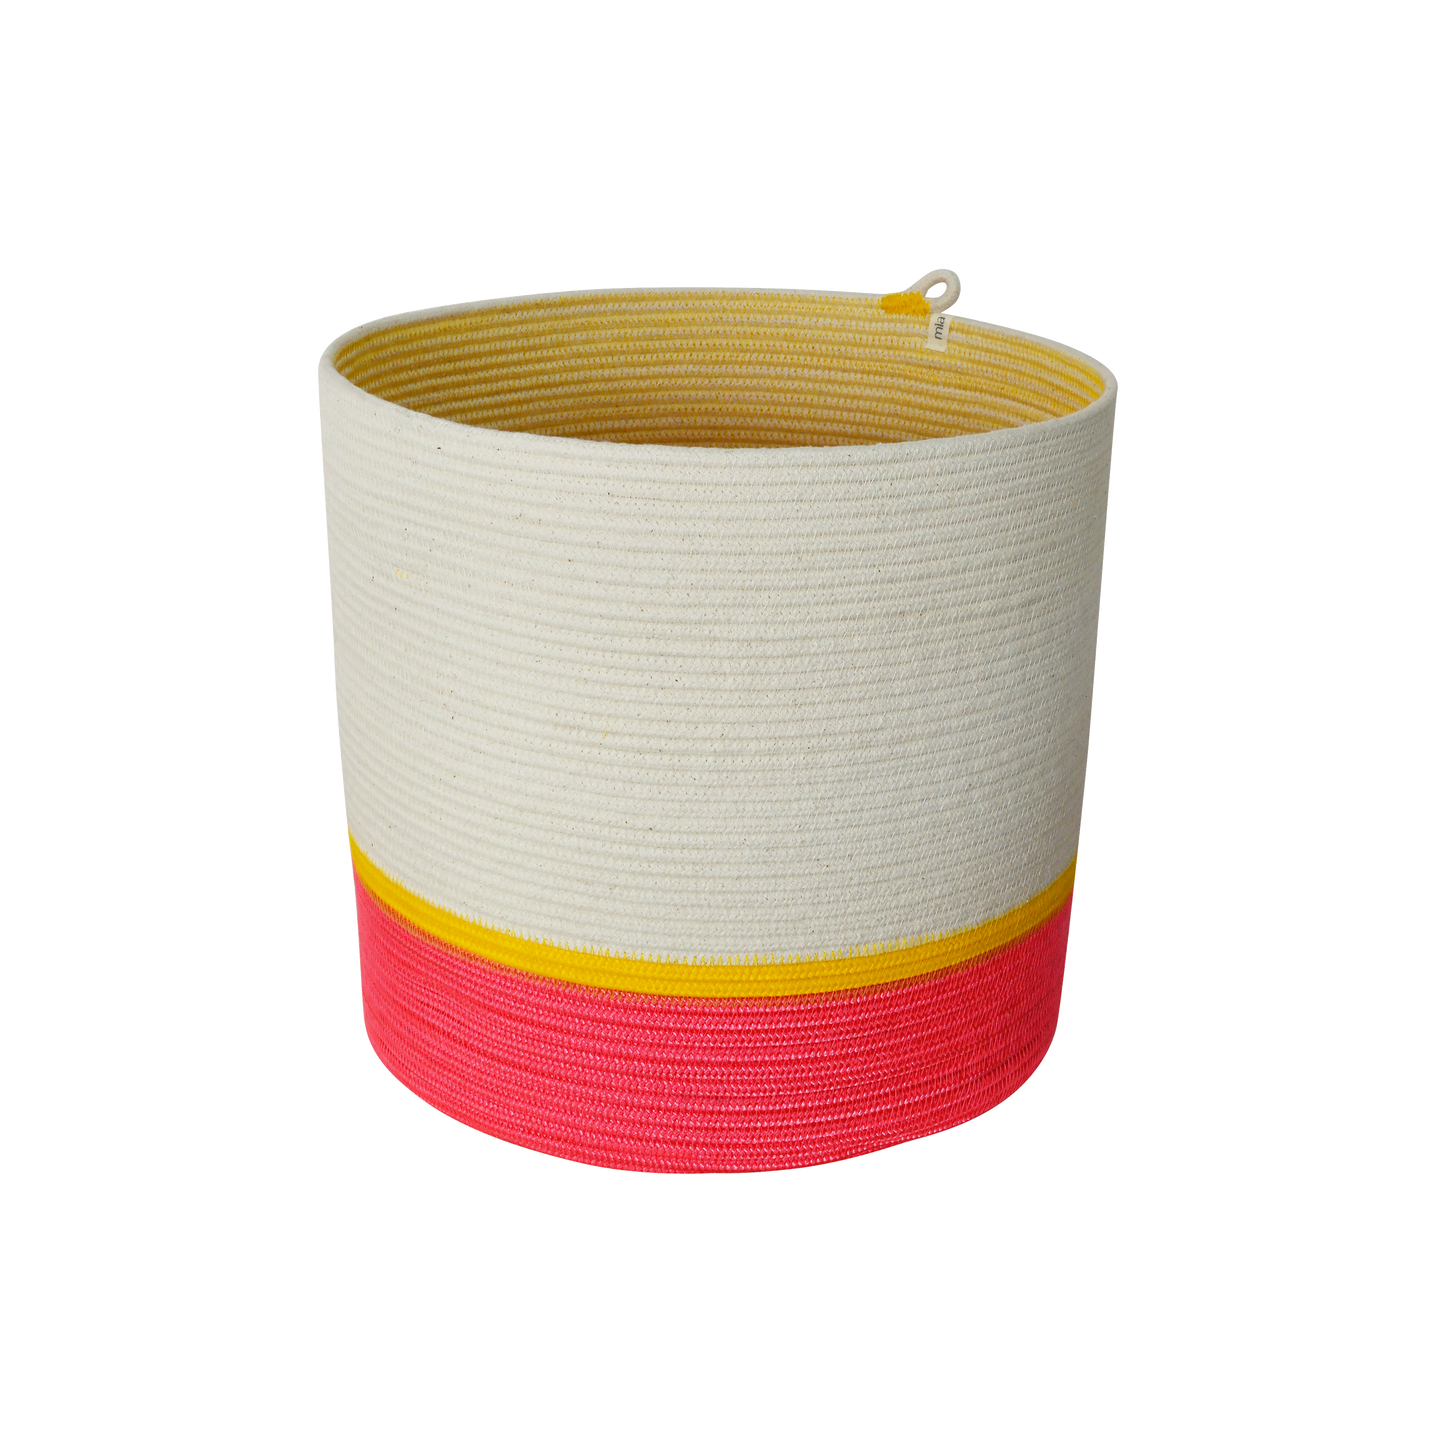 Cylinder Basket